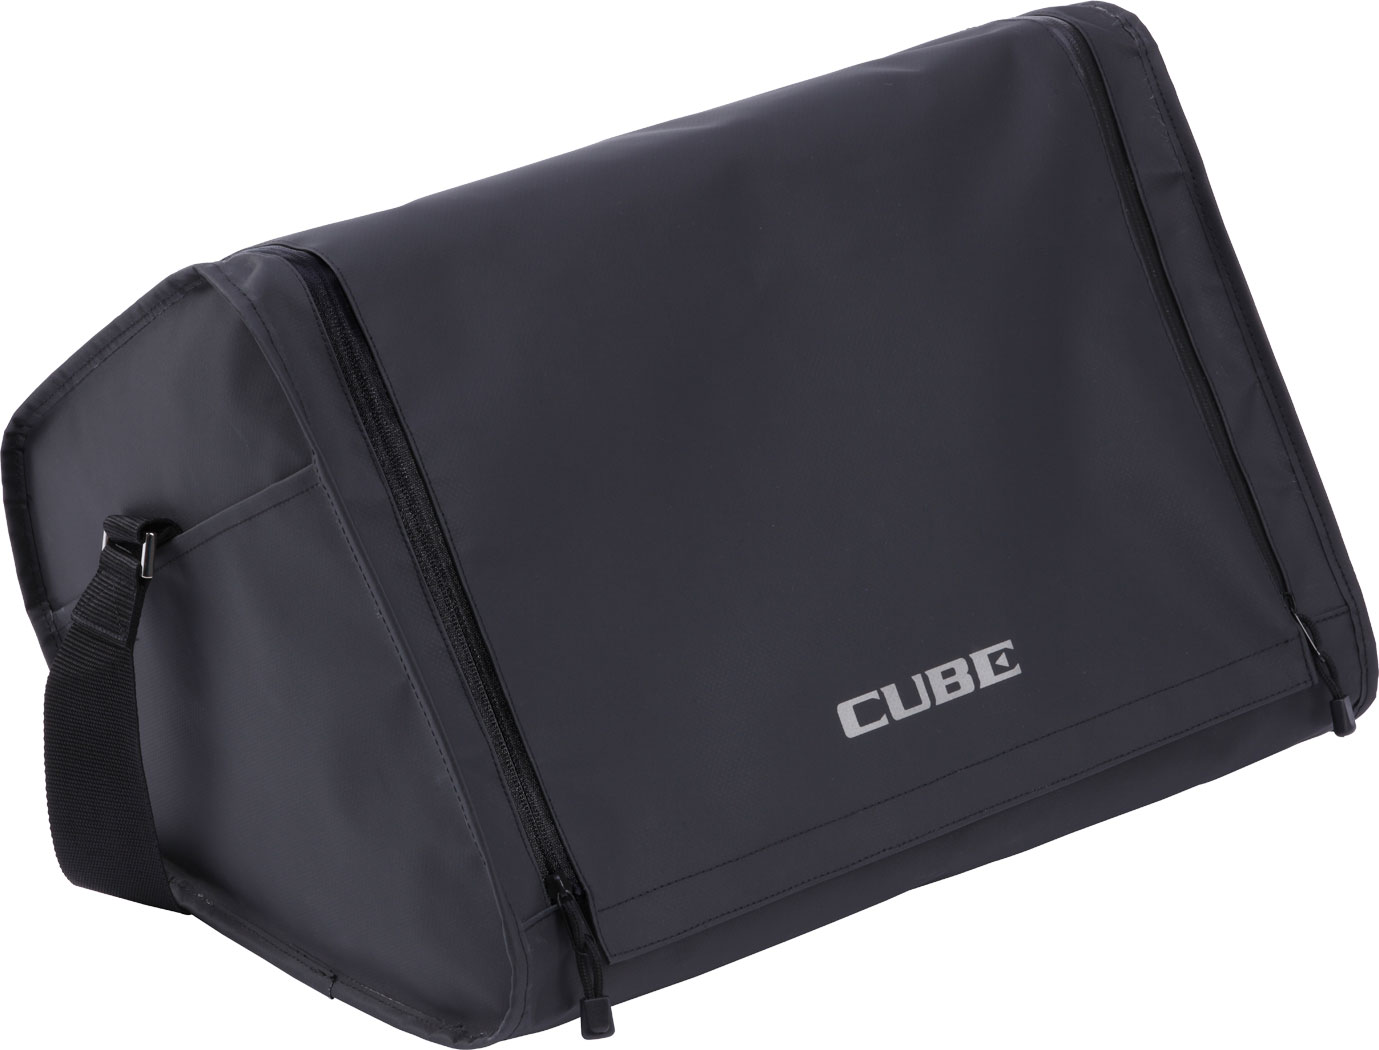 ROLAND CB-CS2 CARRY BAG FOR CUBE STREET EX AMP BAGS